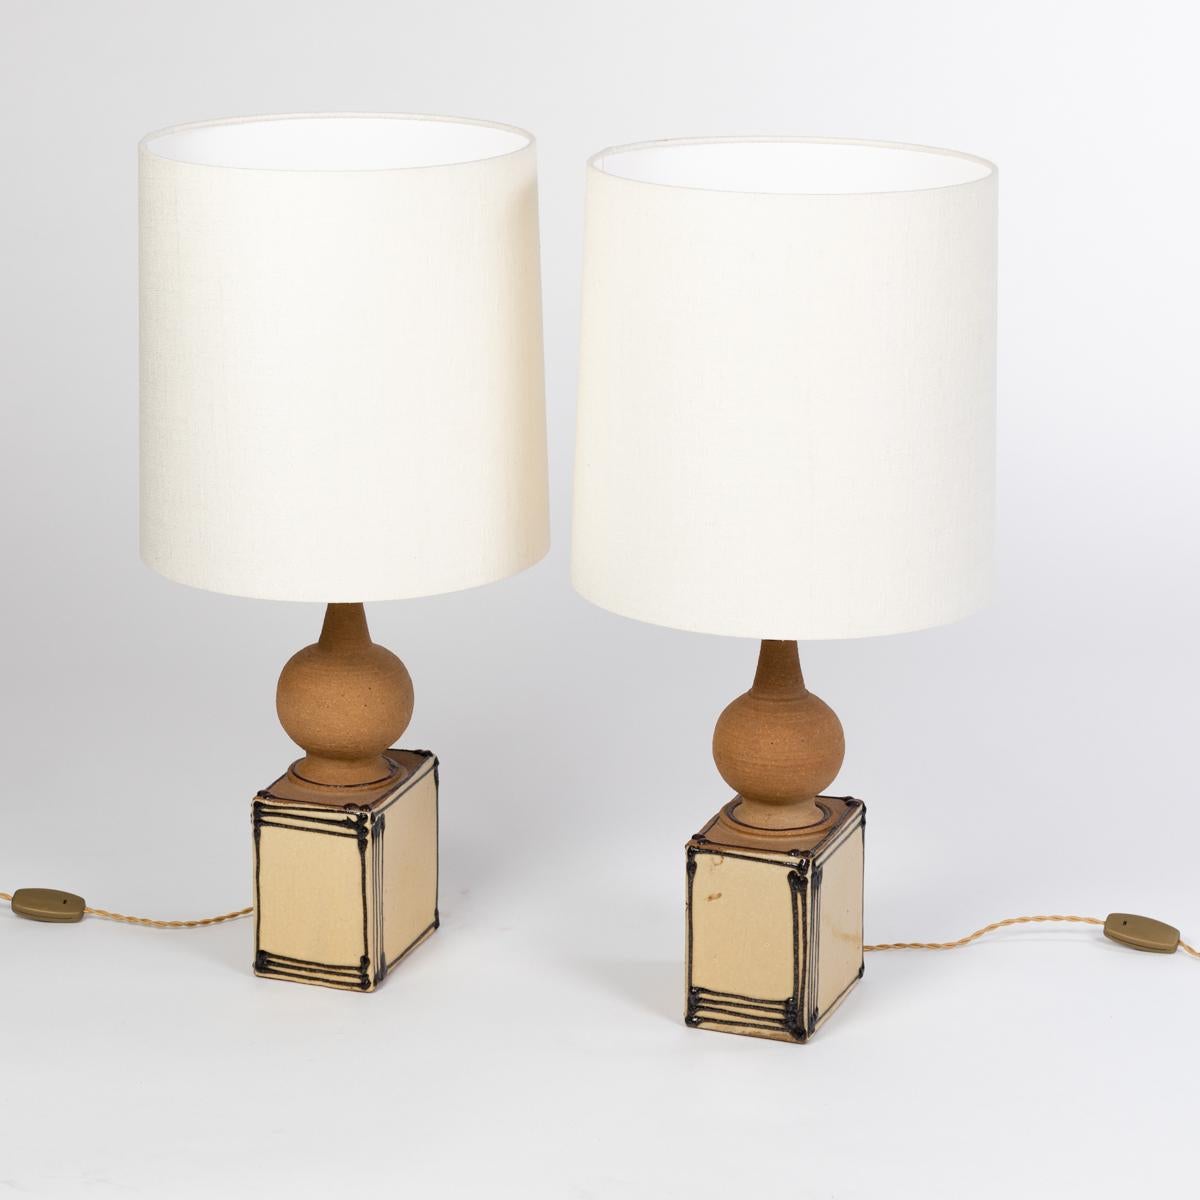 Danish Pair of Scandinavian Mid-Century Ceramic Table Lamps by Heerwegen Denmark 1971 For Sale